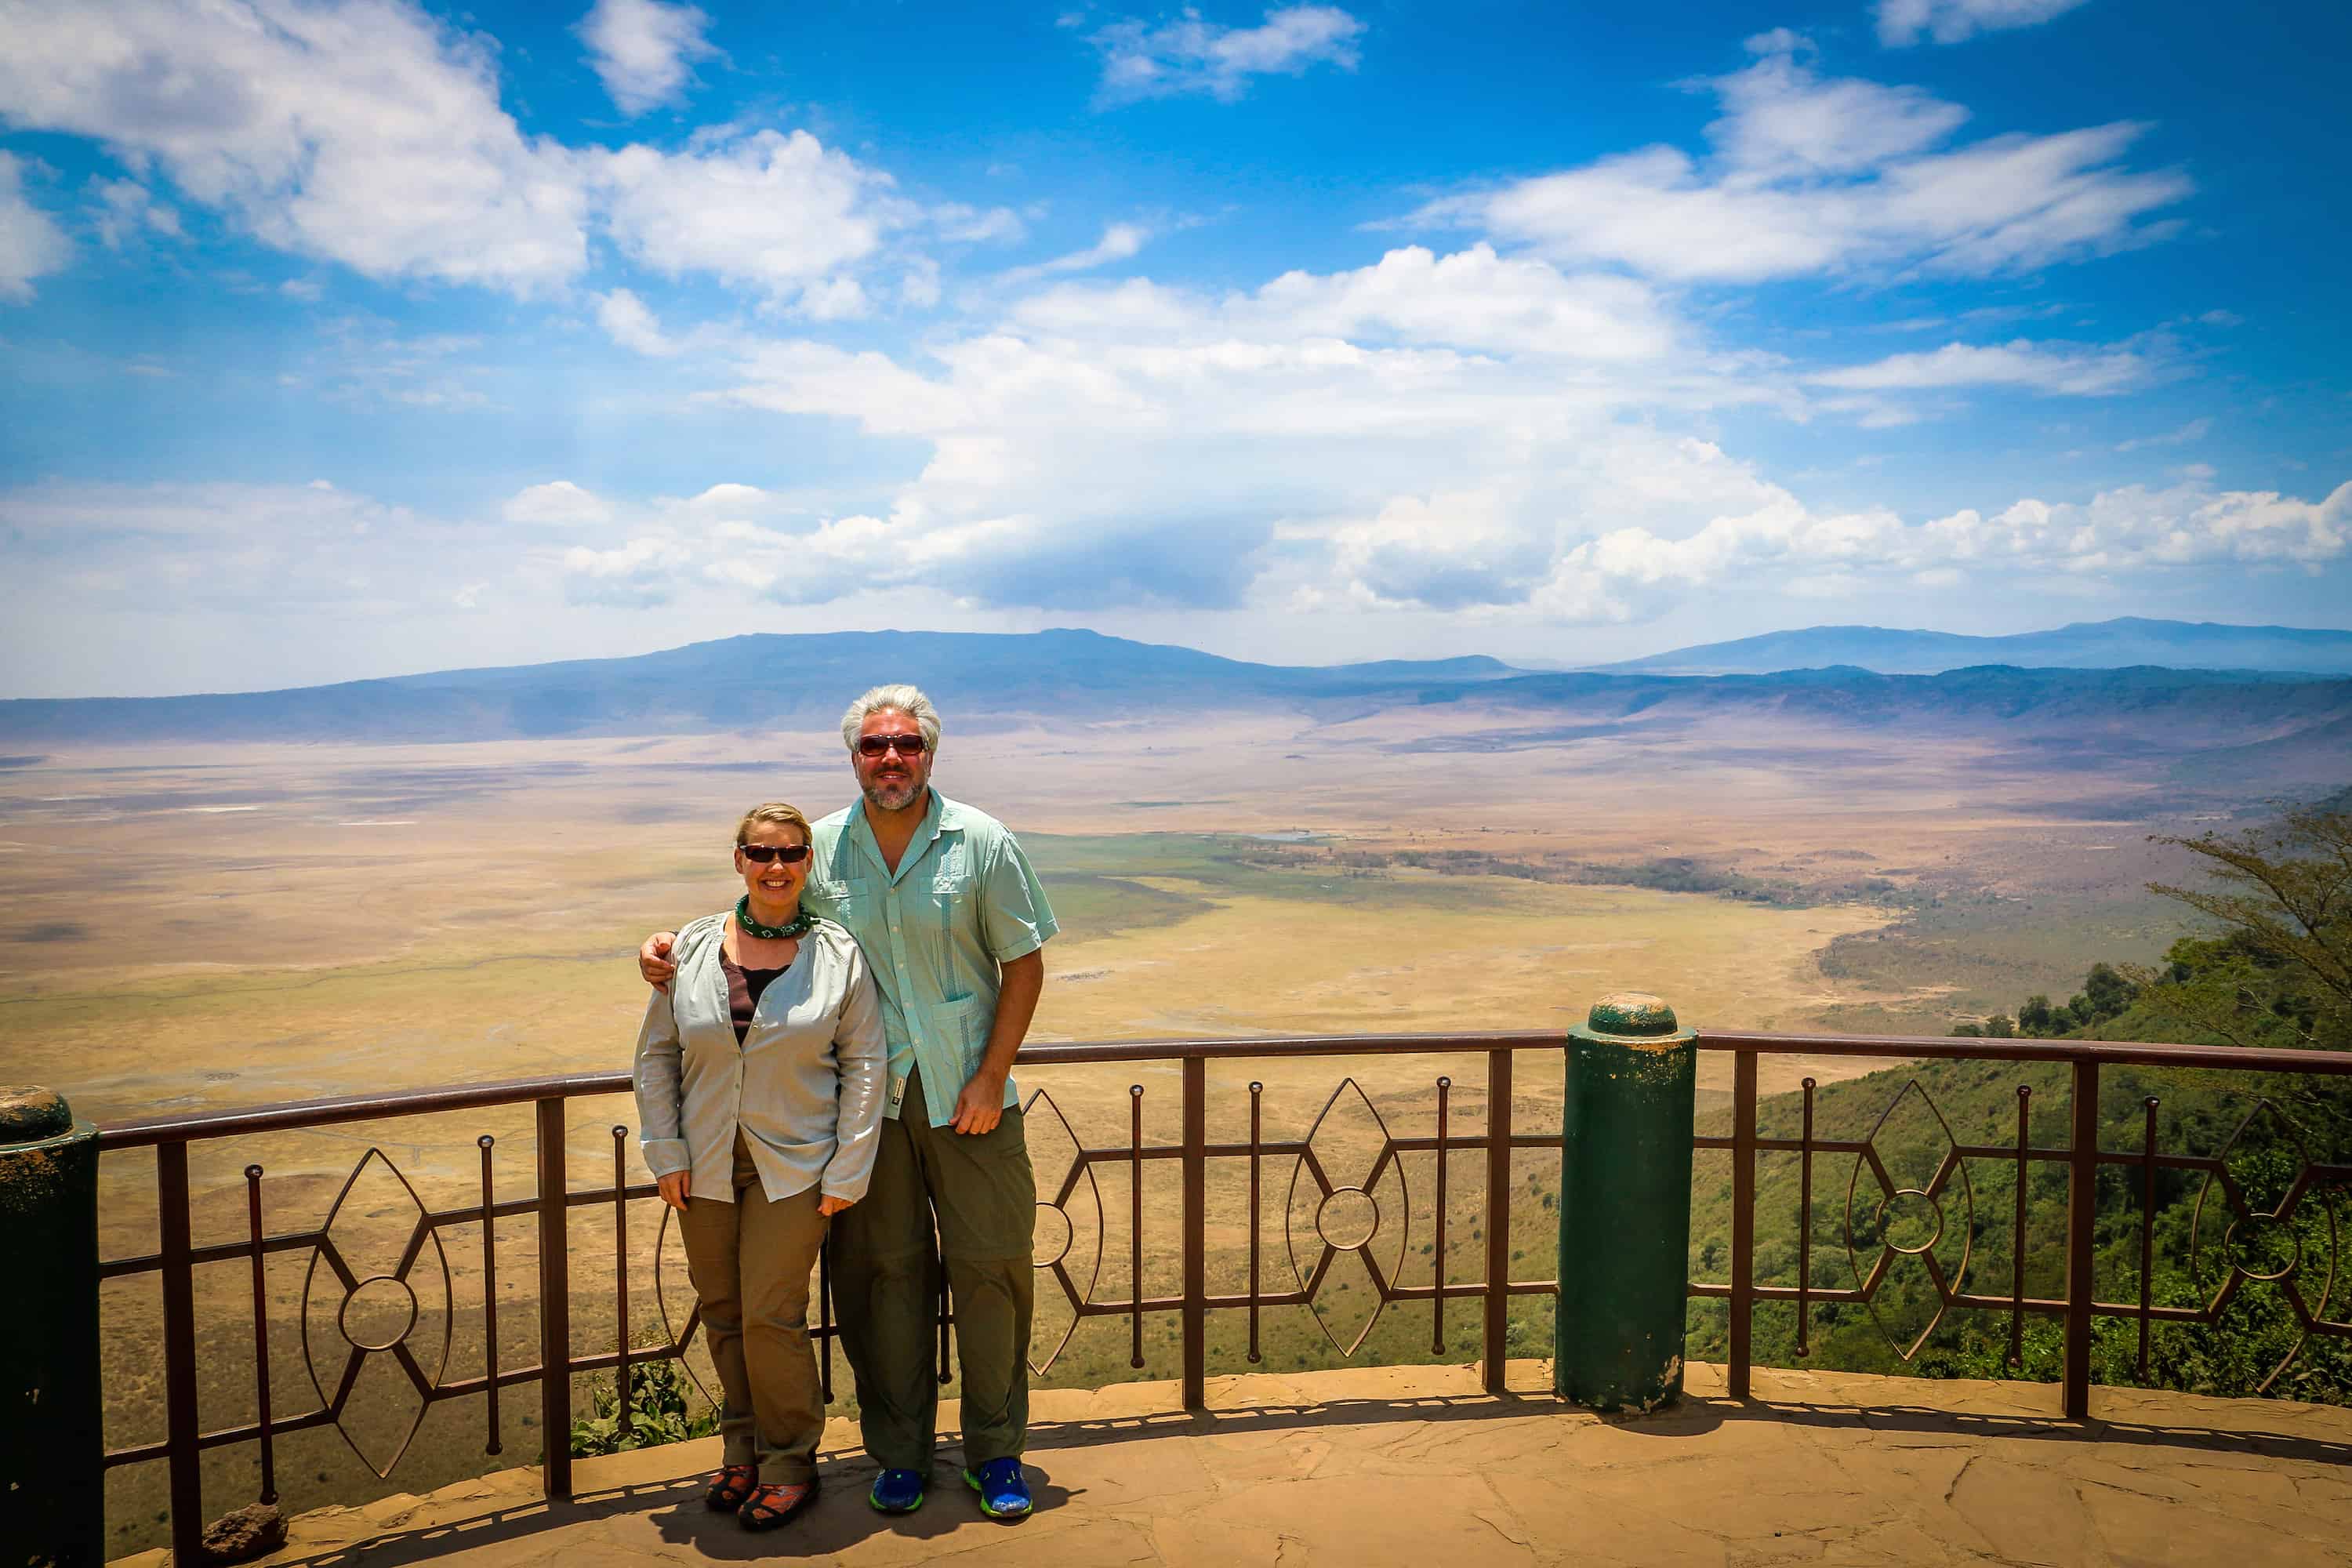 Bret Love and Mary Gabbett in Tanzania's Ngorongoro Conservation Area